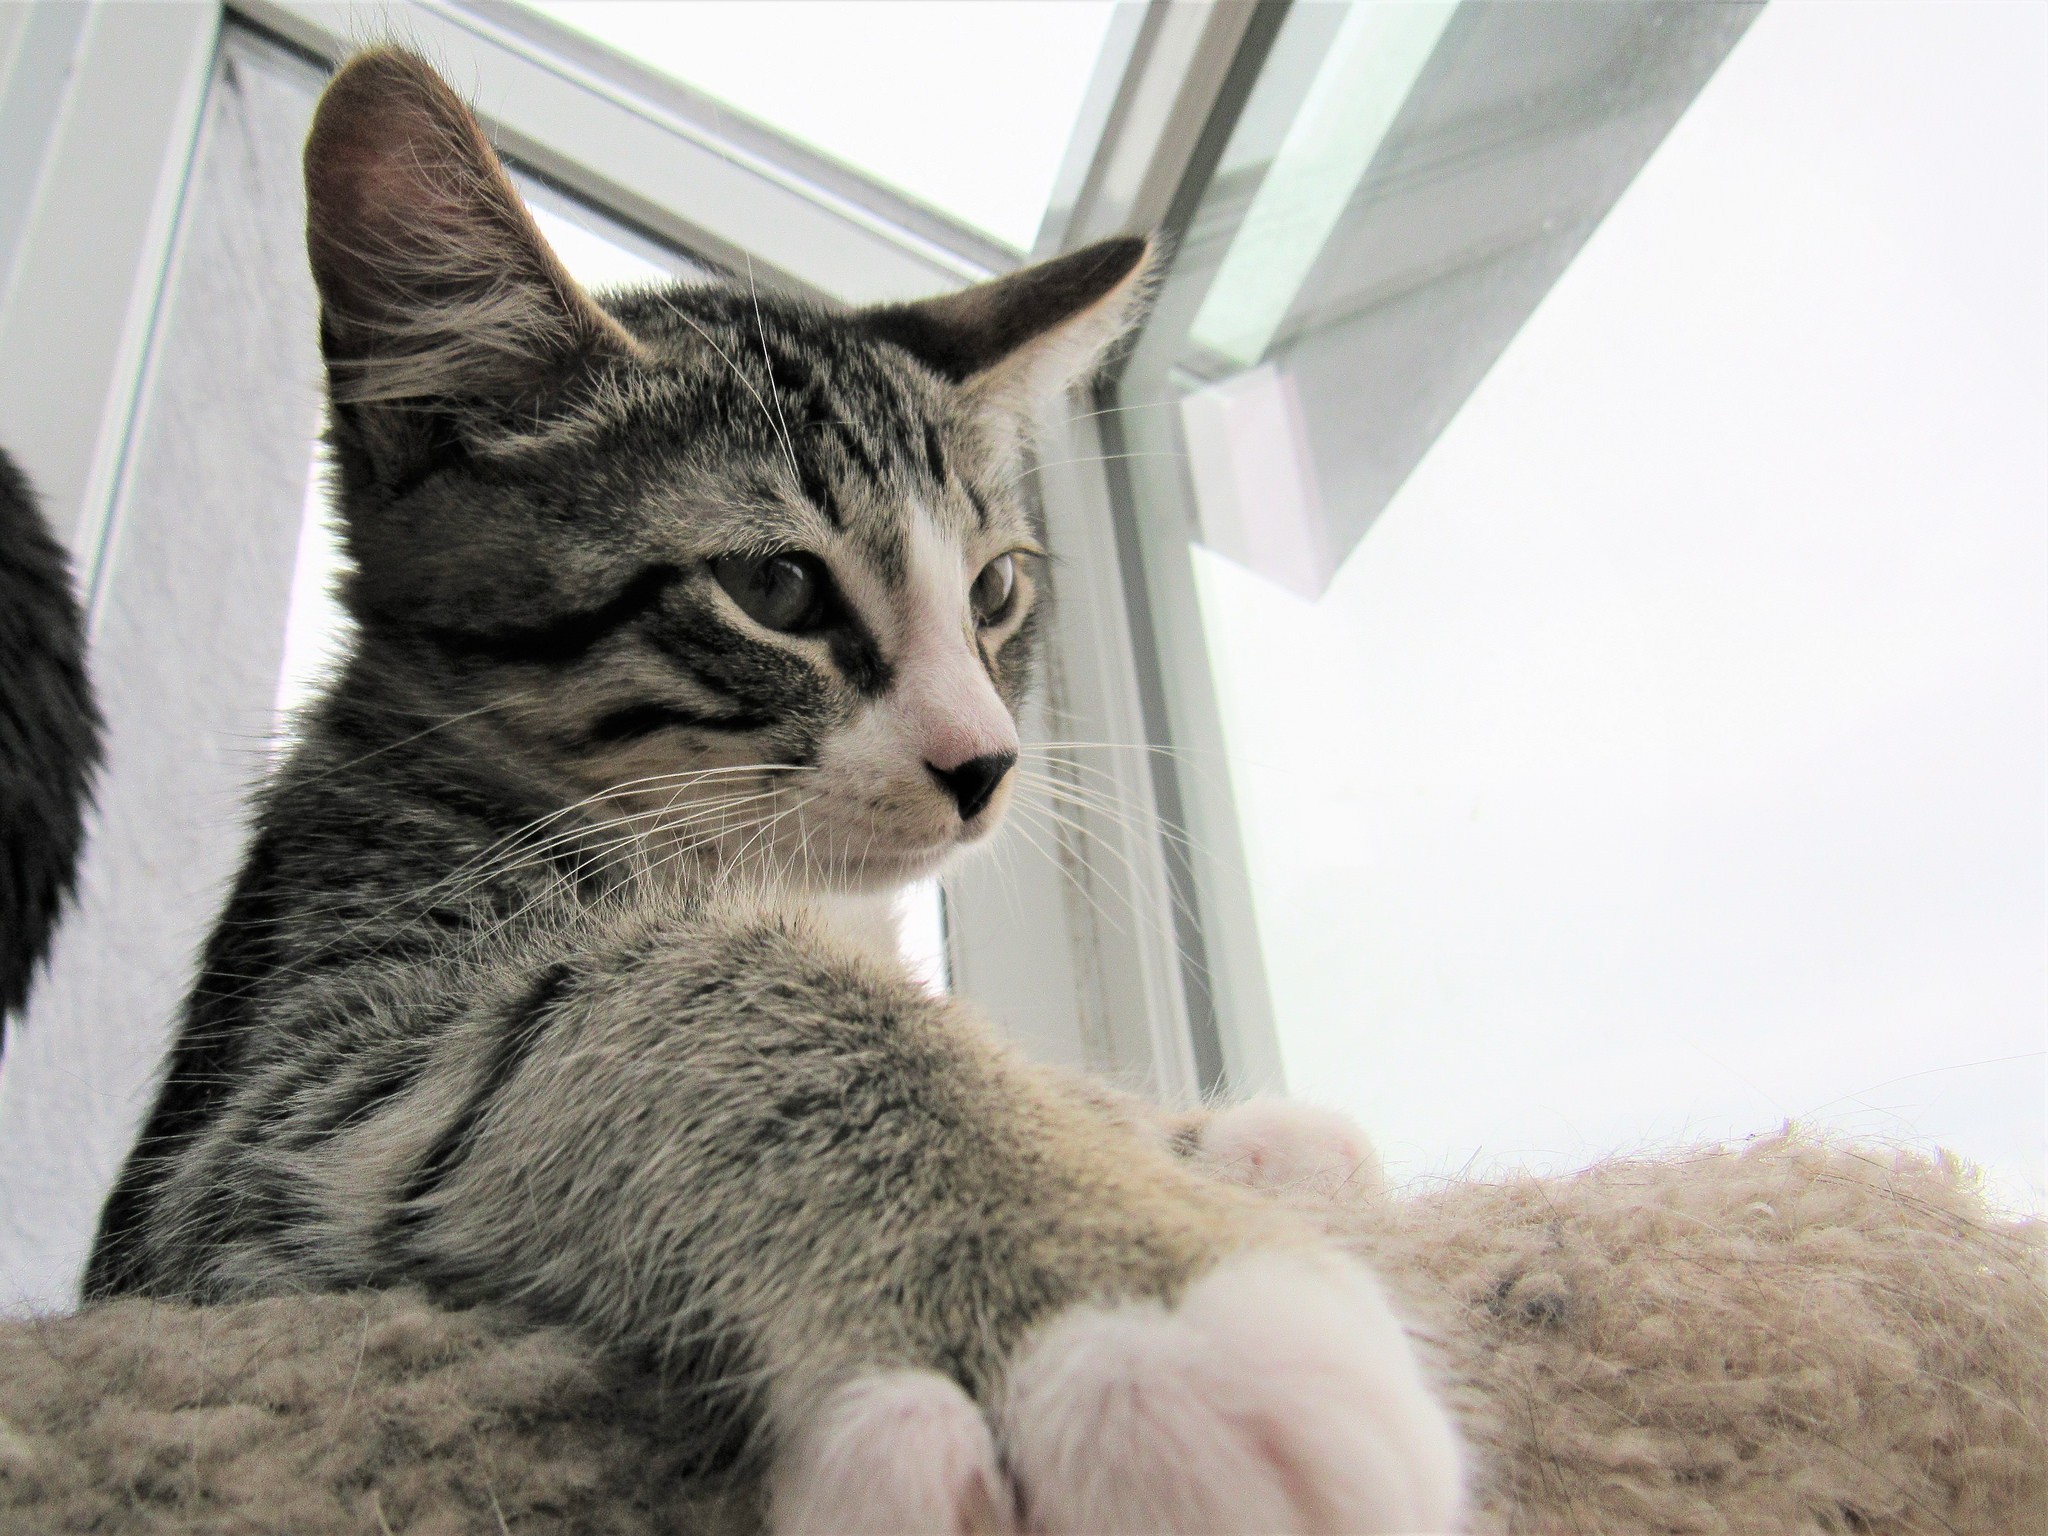 Gatos podem ser canhotos ou destros (Foto: Jennifer C./Flickr)